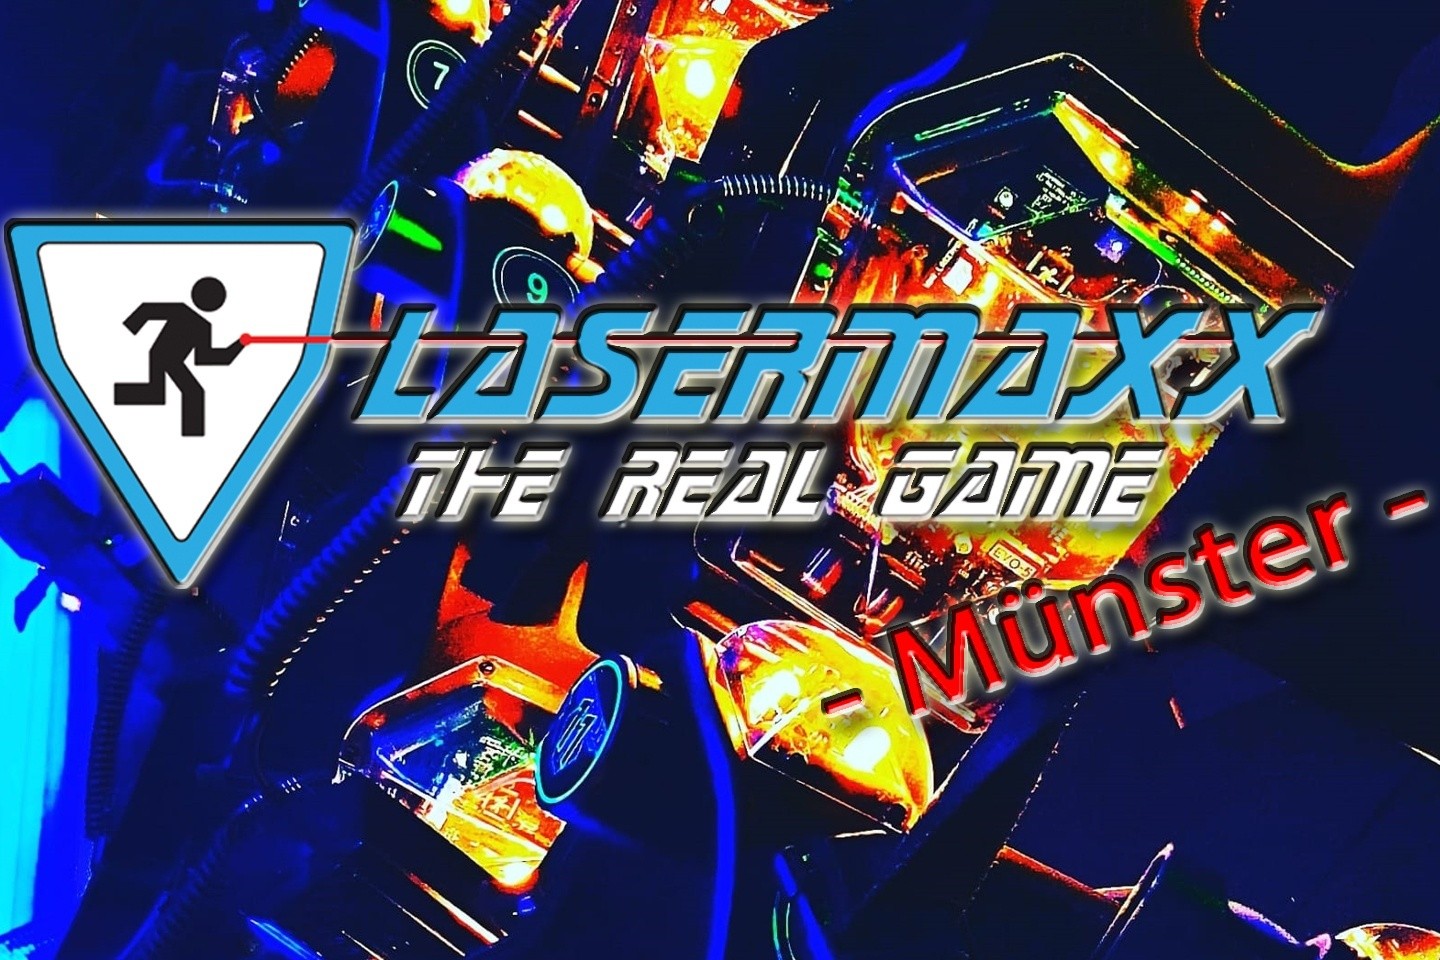 Lasermaxx